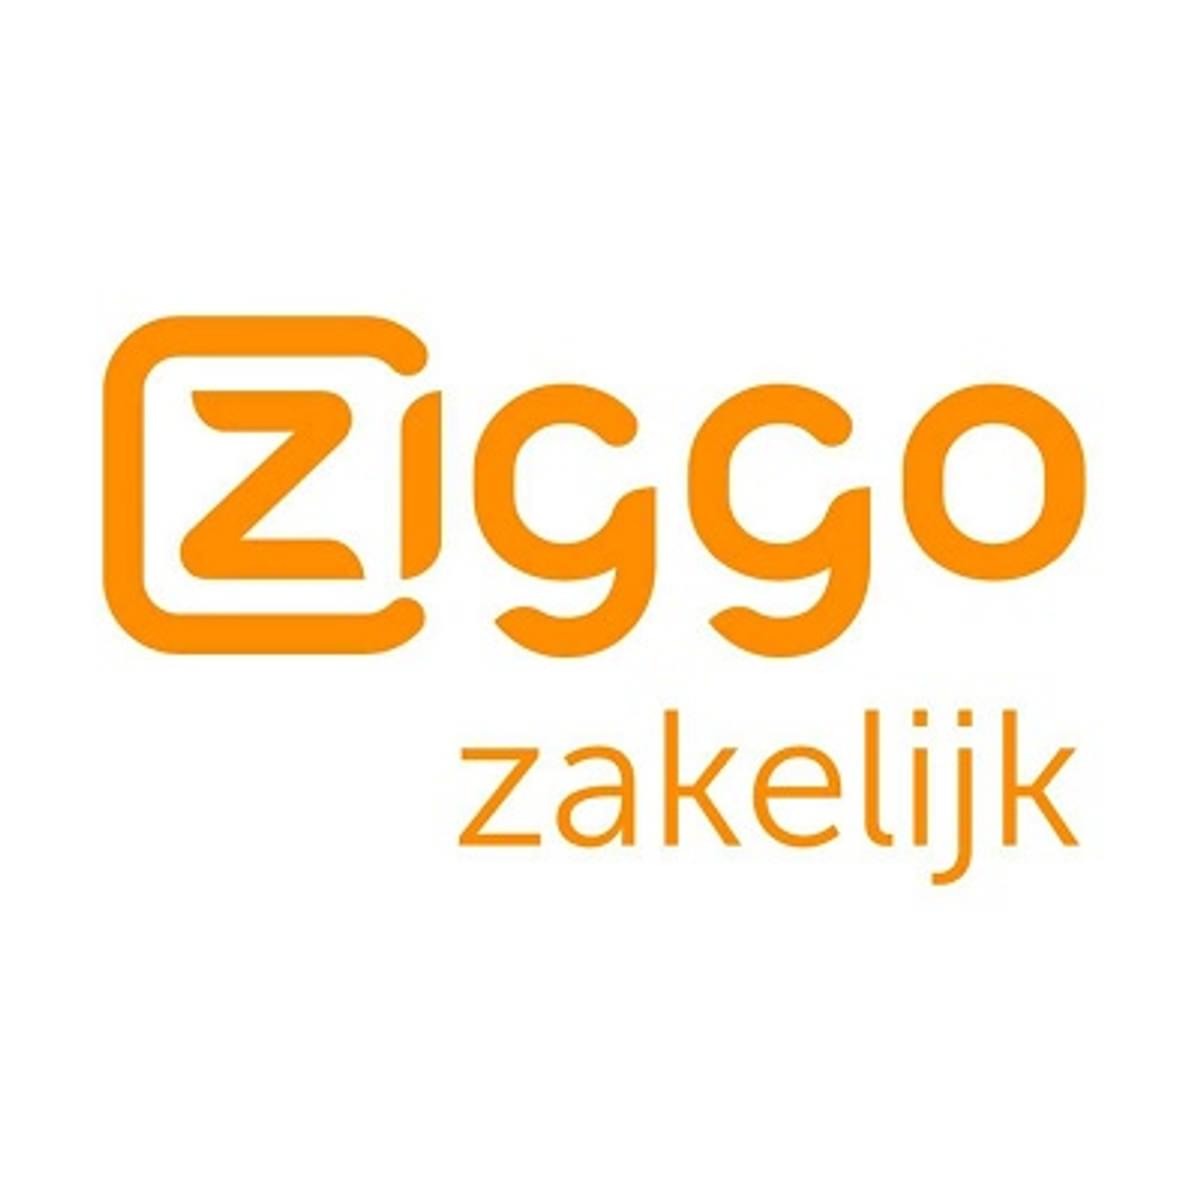 Ziggo Zakelijk voice platform kampte met storing image